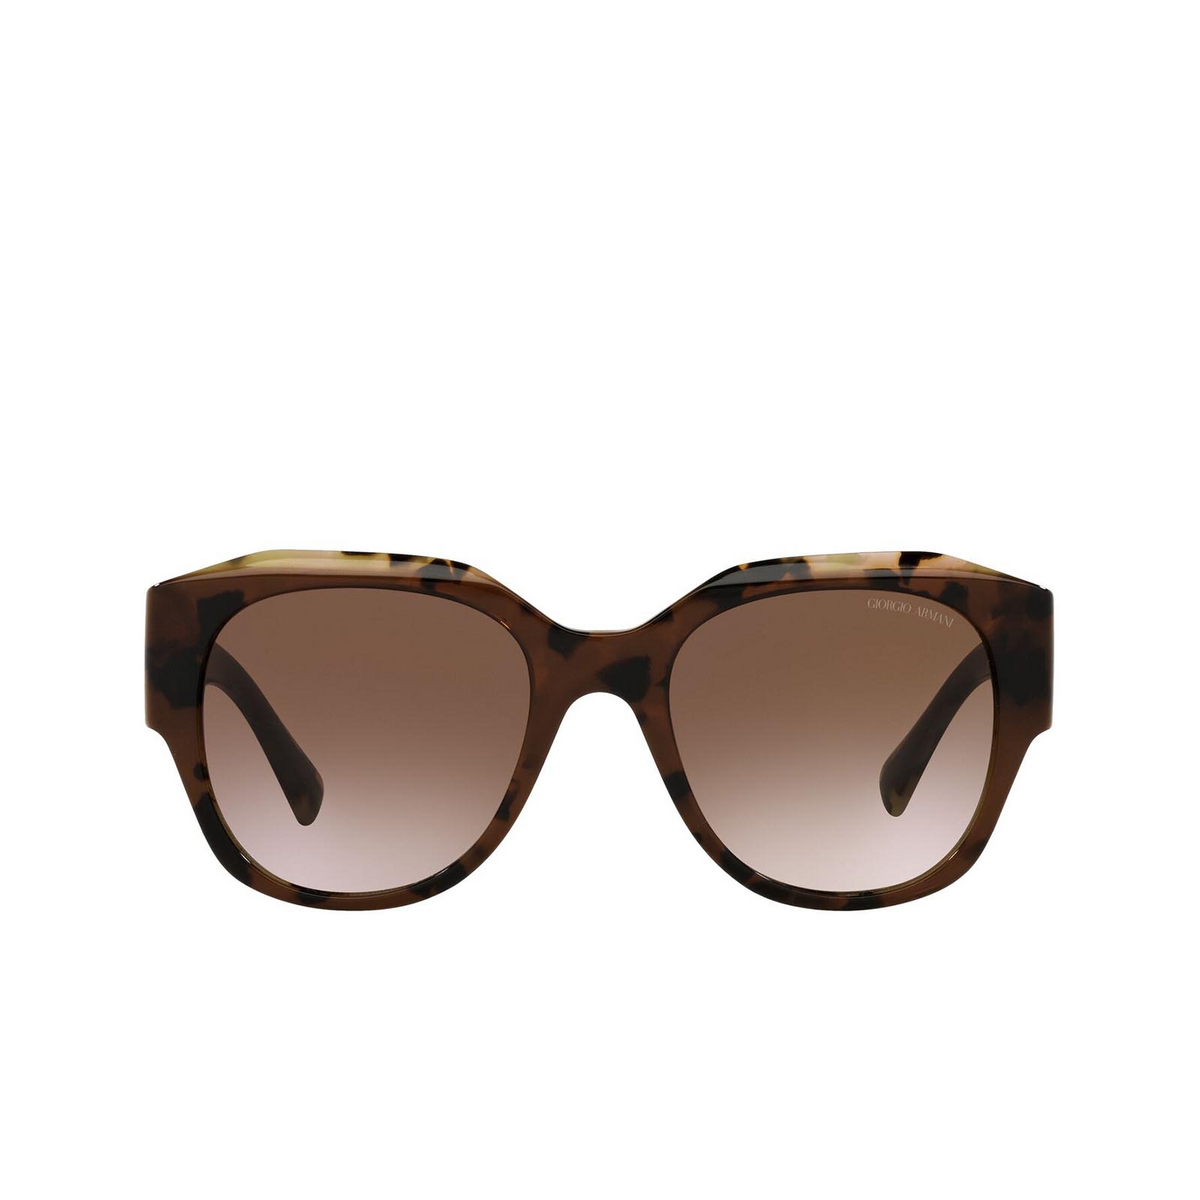 Giorgio Armani AR8140 Sunglasses 586713 Brown Tortoise - front view